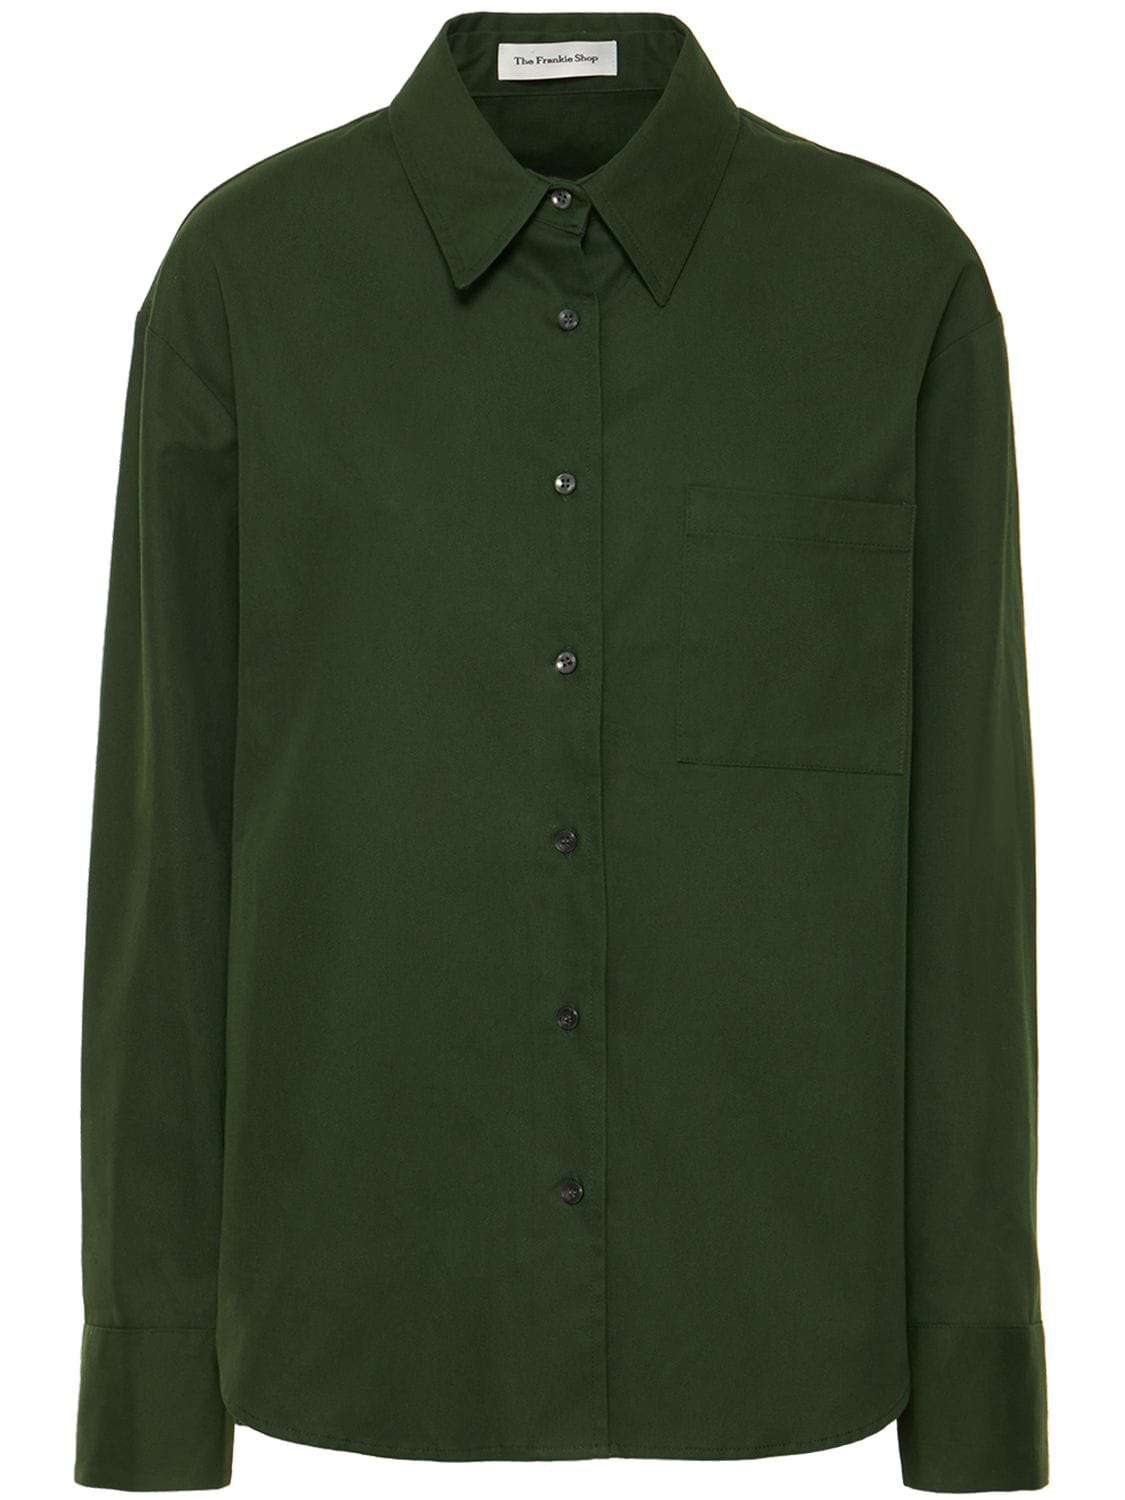 The Frankie Shop Lui Cotton Twill Shirt In Dark Green | ModeSens